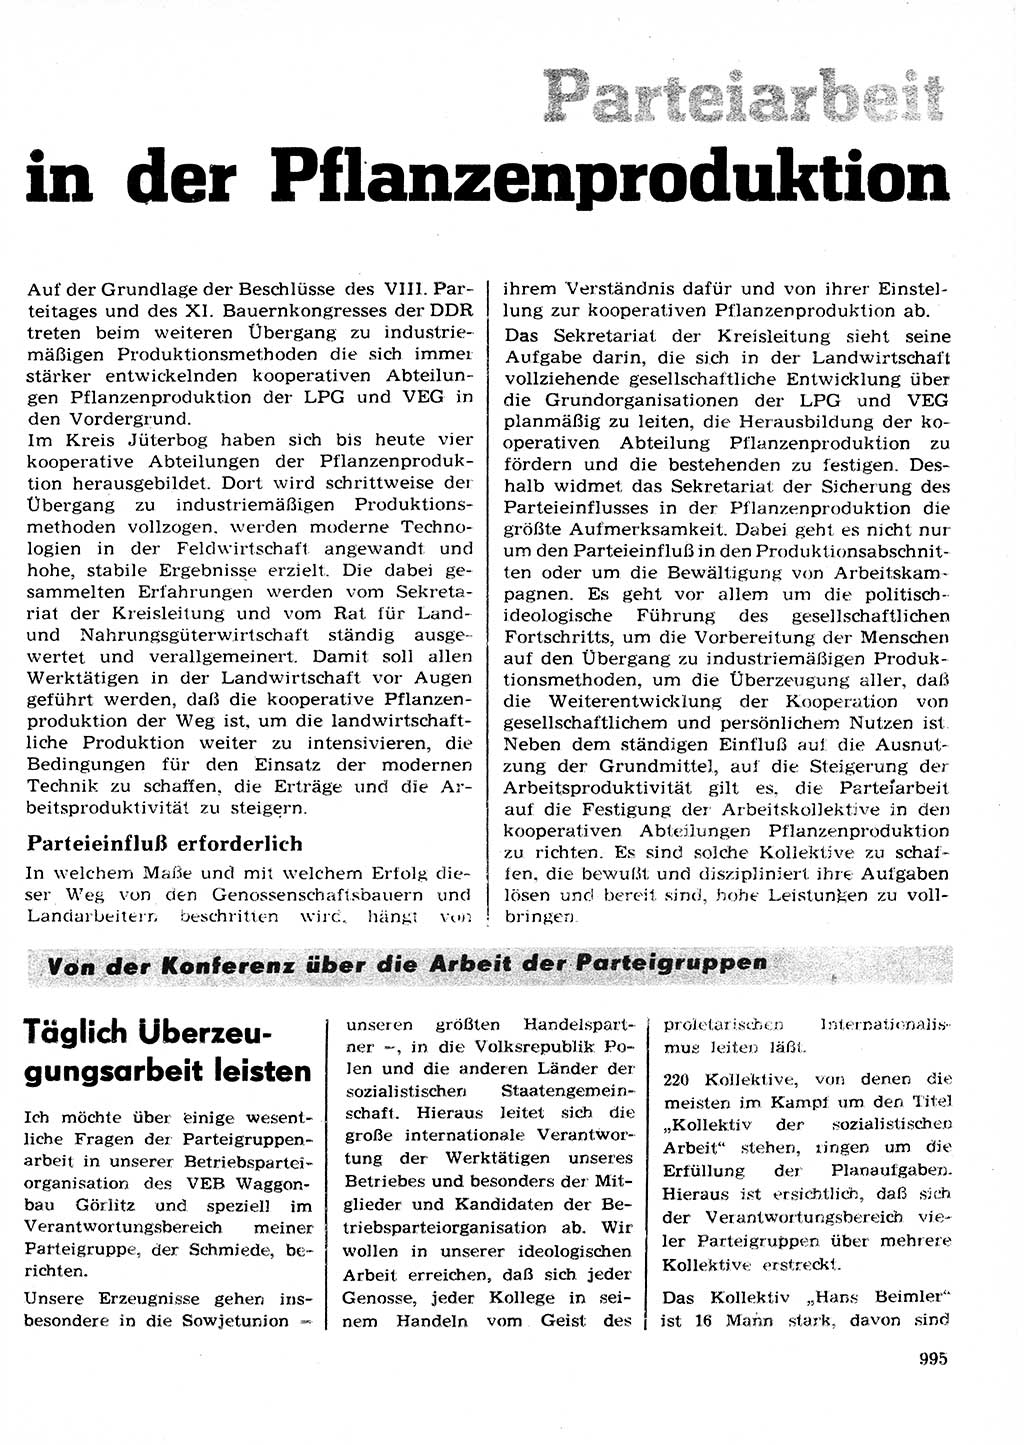 Neuer Weg (NW), Organ des Zentralkomitees (ZK) der SED (Sozialistische Einheitspartei Deutschlands) für Fragen des Parteilebens, 27. Jahrgang [Deutsche Demokratische Republik (DDR)] 1972, Seite 995 (NW ZK SED DDR 1972, S. 995)